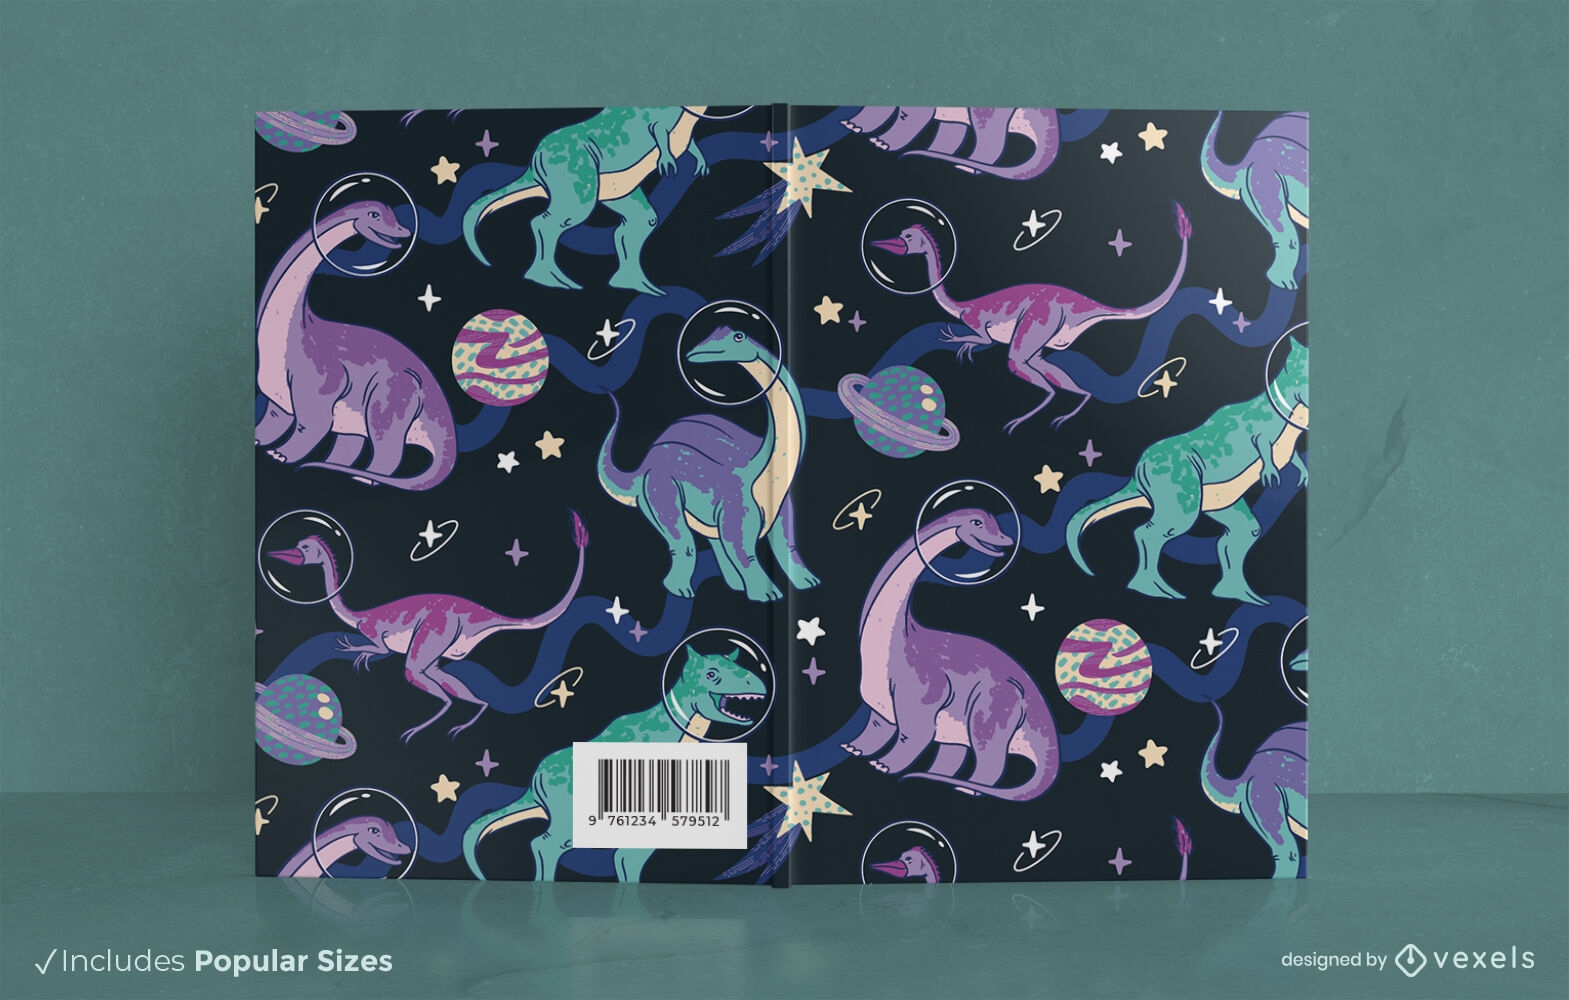 Dinossauros no design da capa do livro espacial